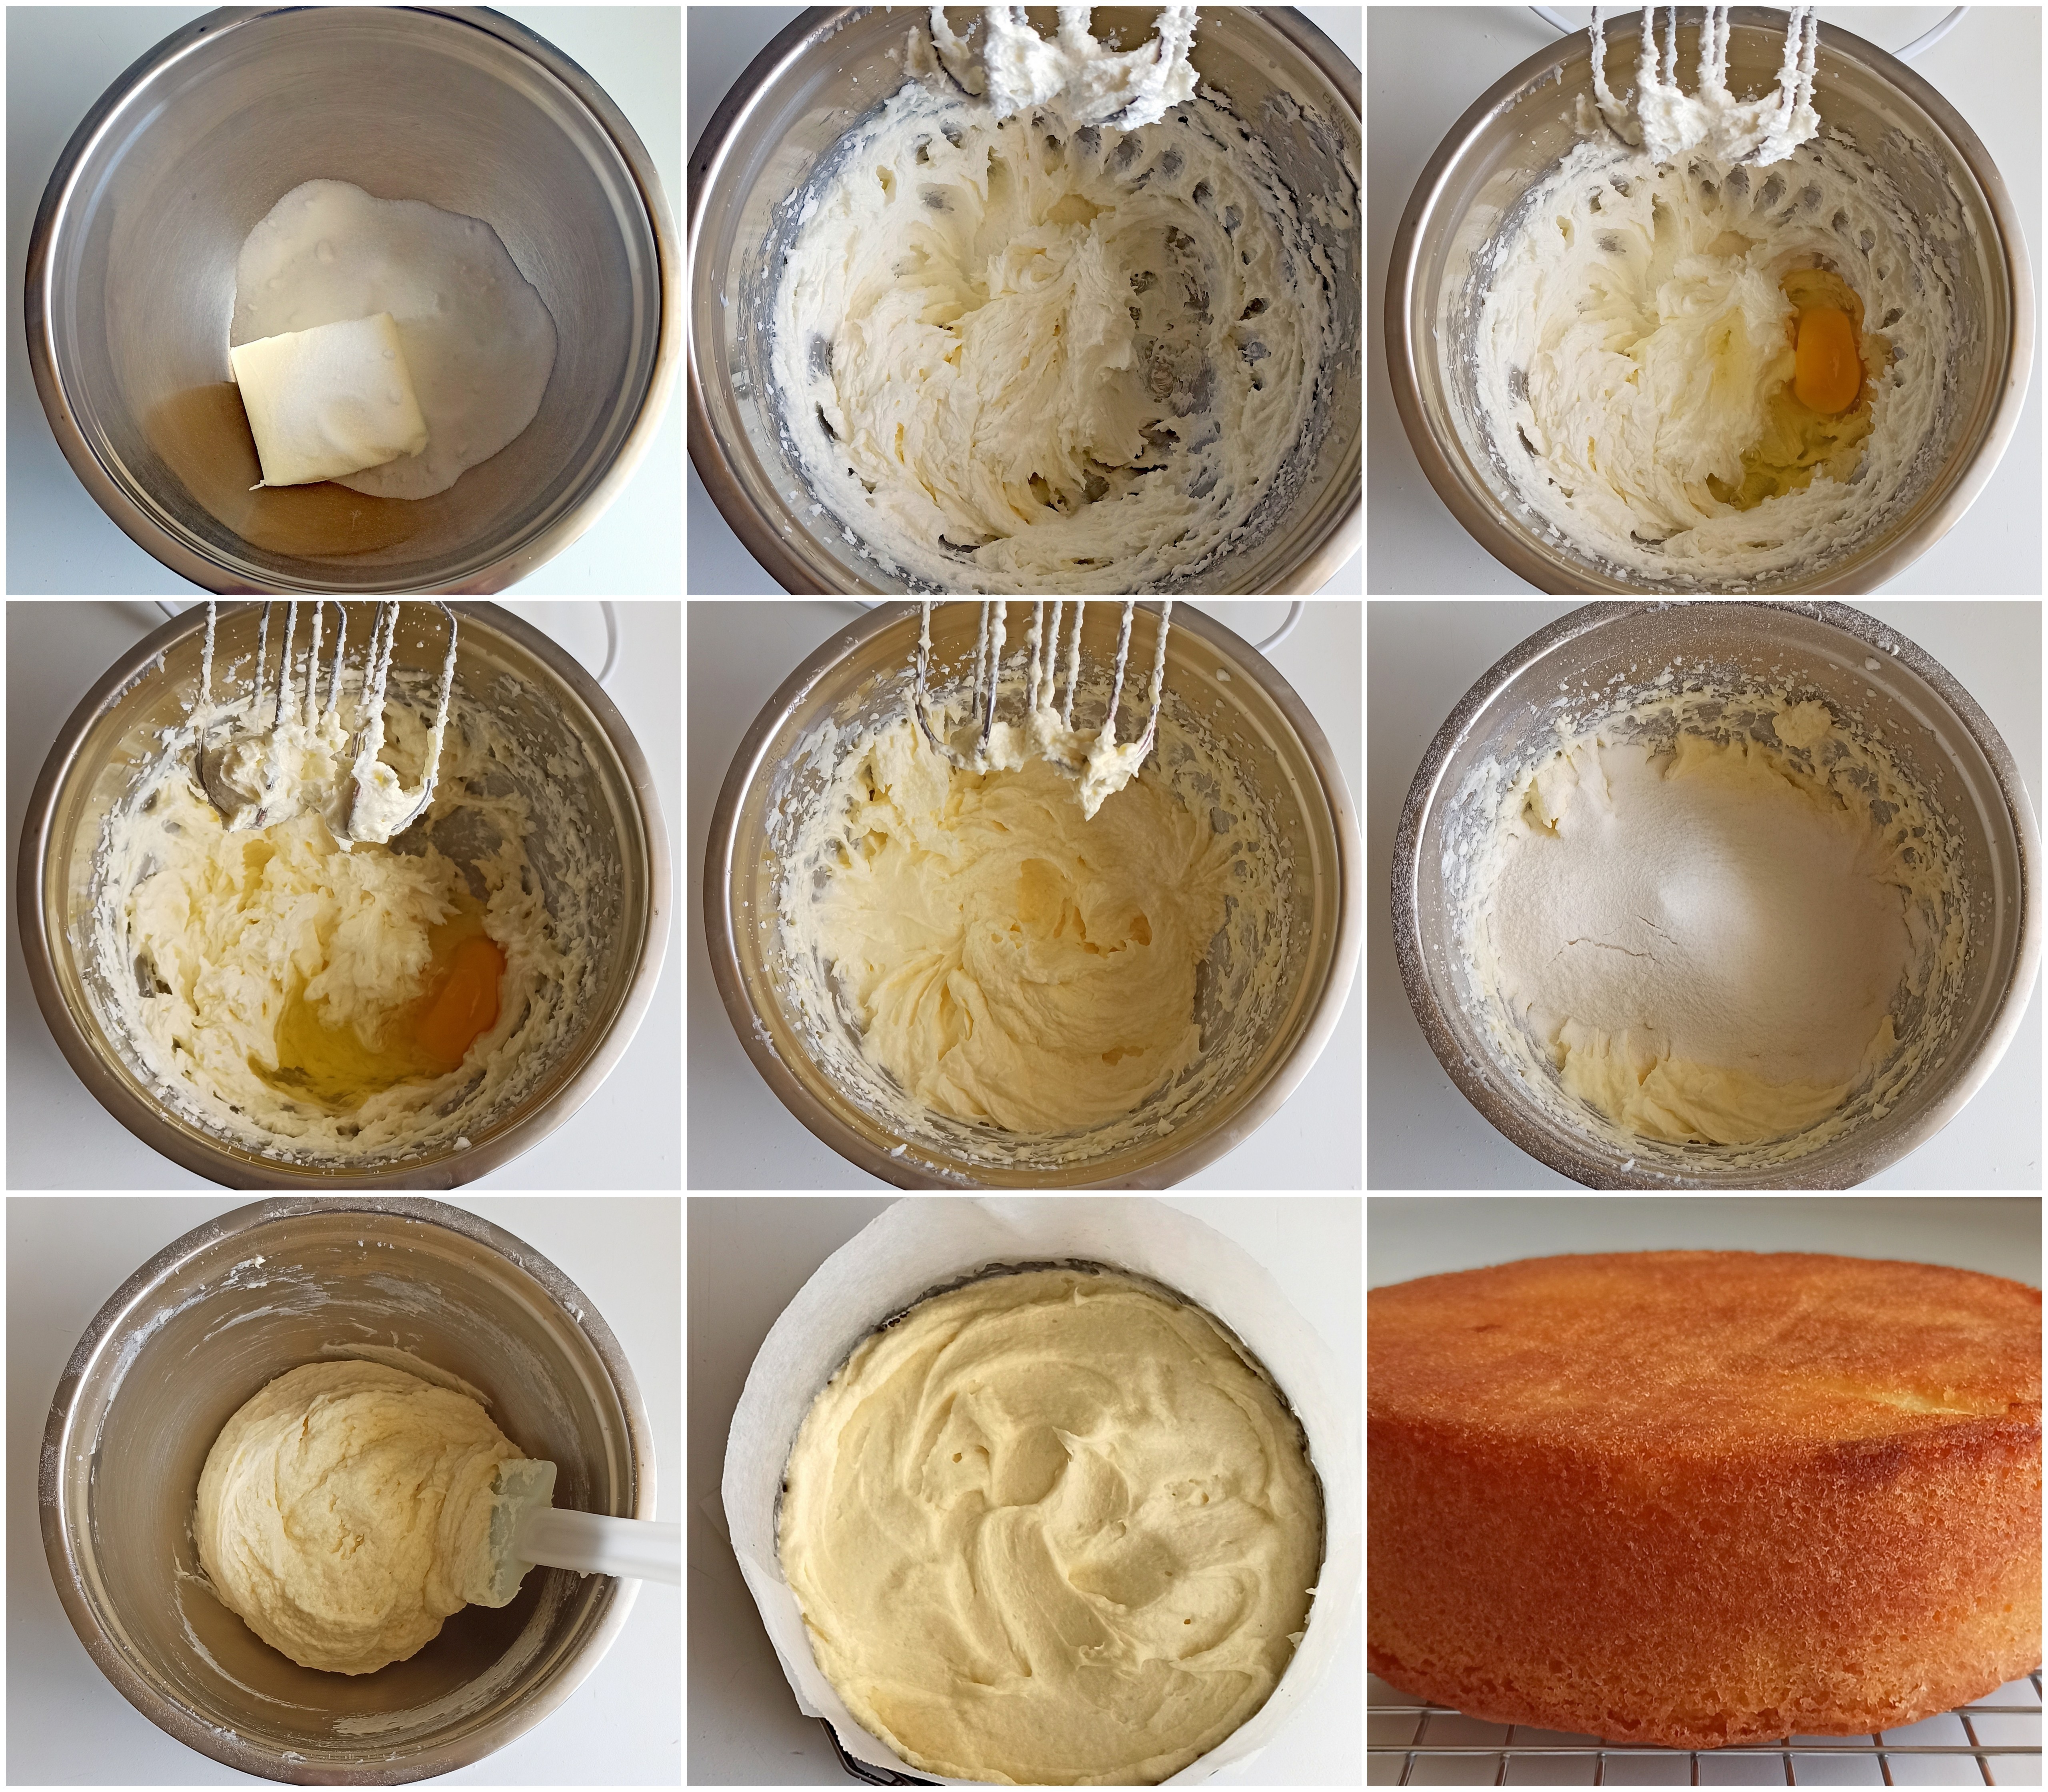 Sponge cake sans gluten à la crème au beurre meringuée - La Cassata Celiaca